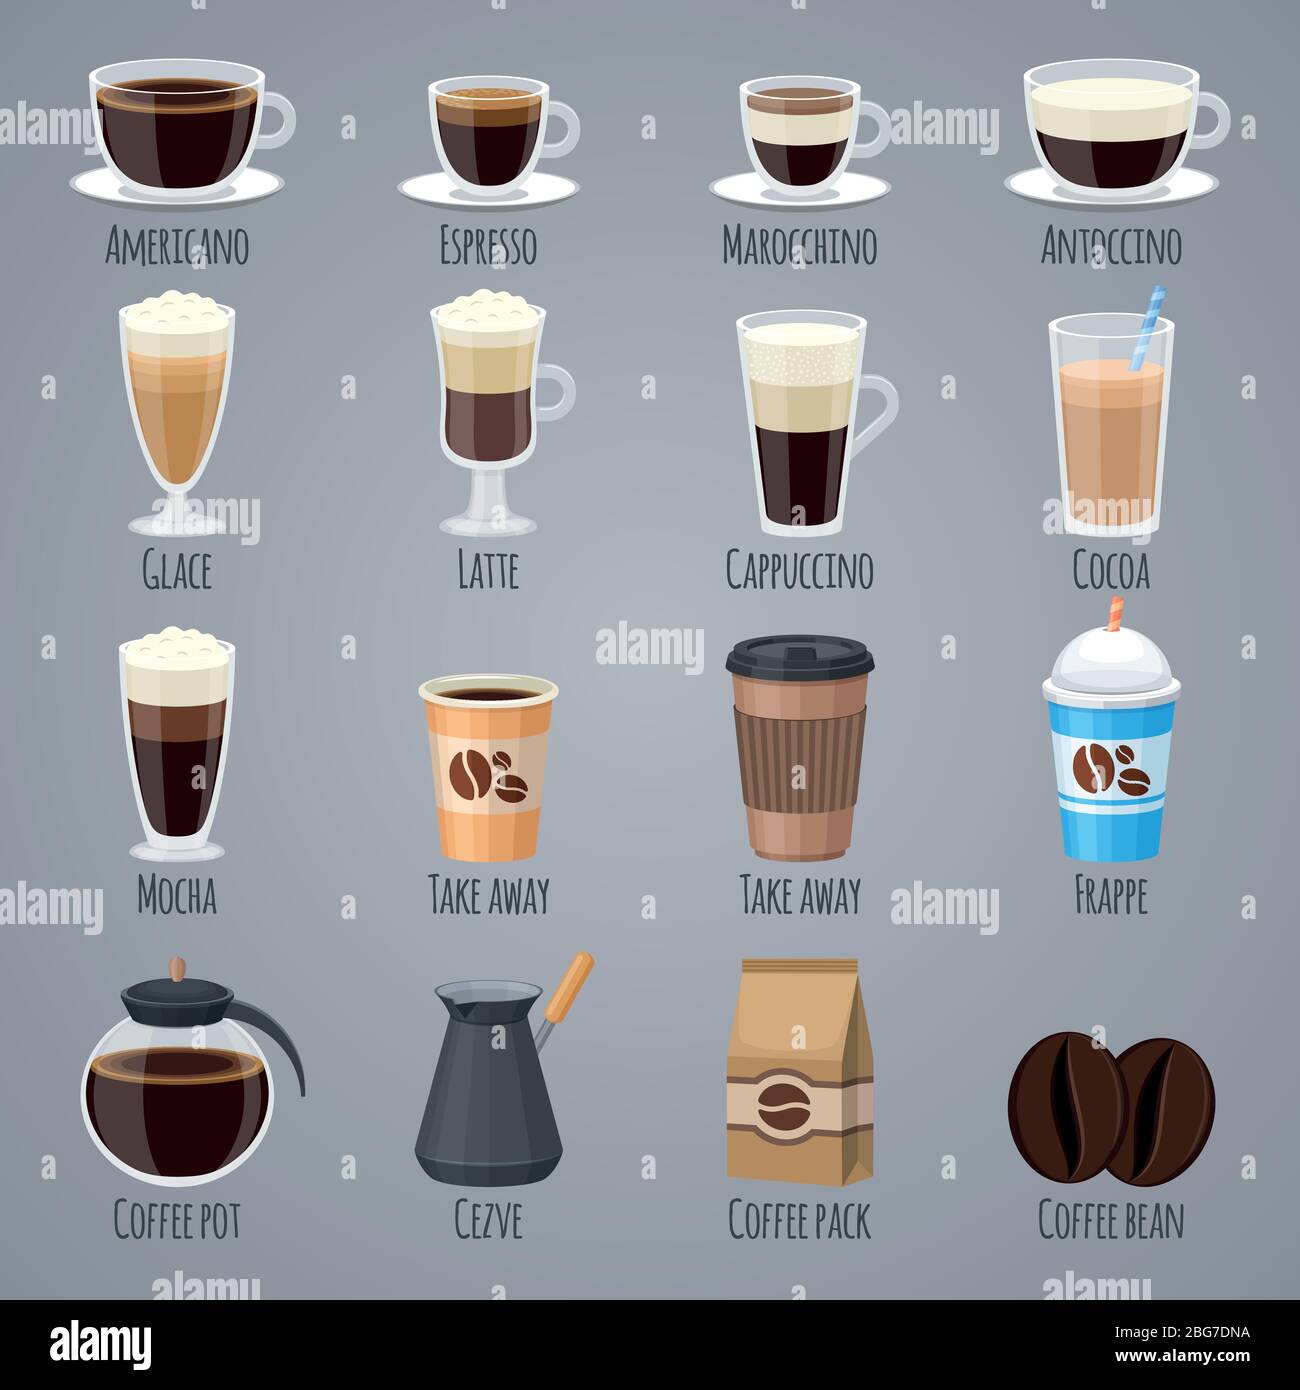 Espresso, latte, cappuccino dans les verres et les tasses. Types de café pour le menu de la maison de café. Les icônes vectorielles plates définissent la boisson, l'arôme de caféine du matin illu Illustration de Vecteur